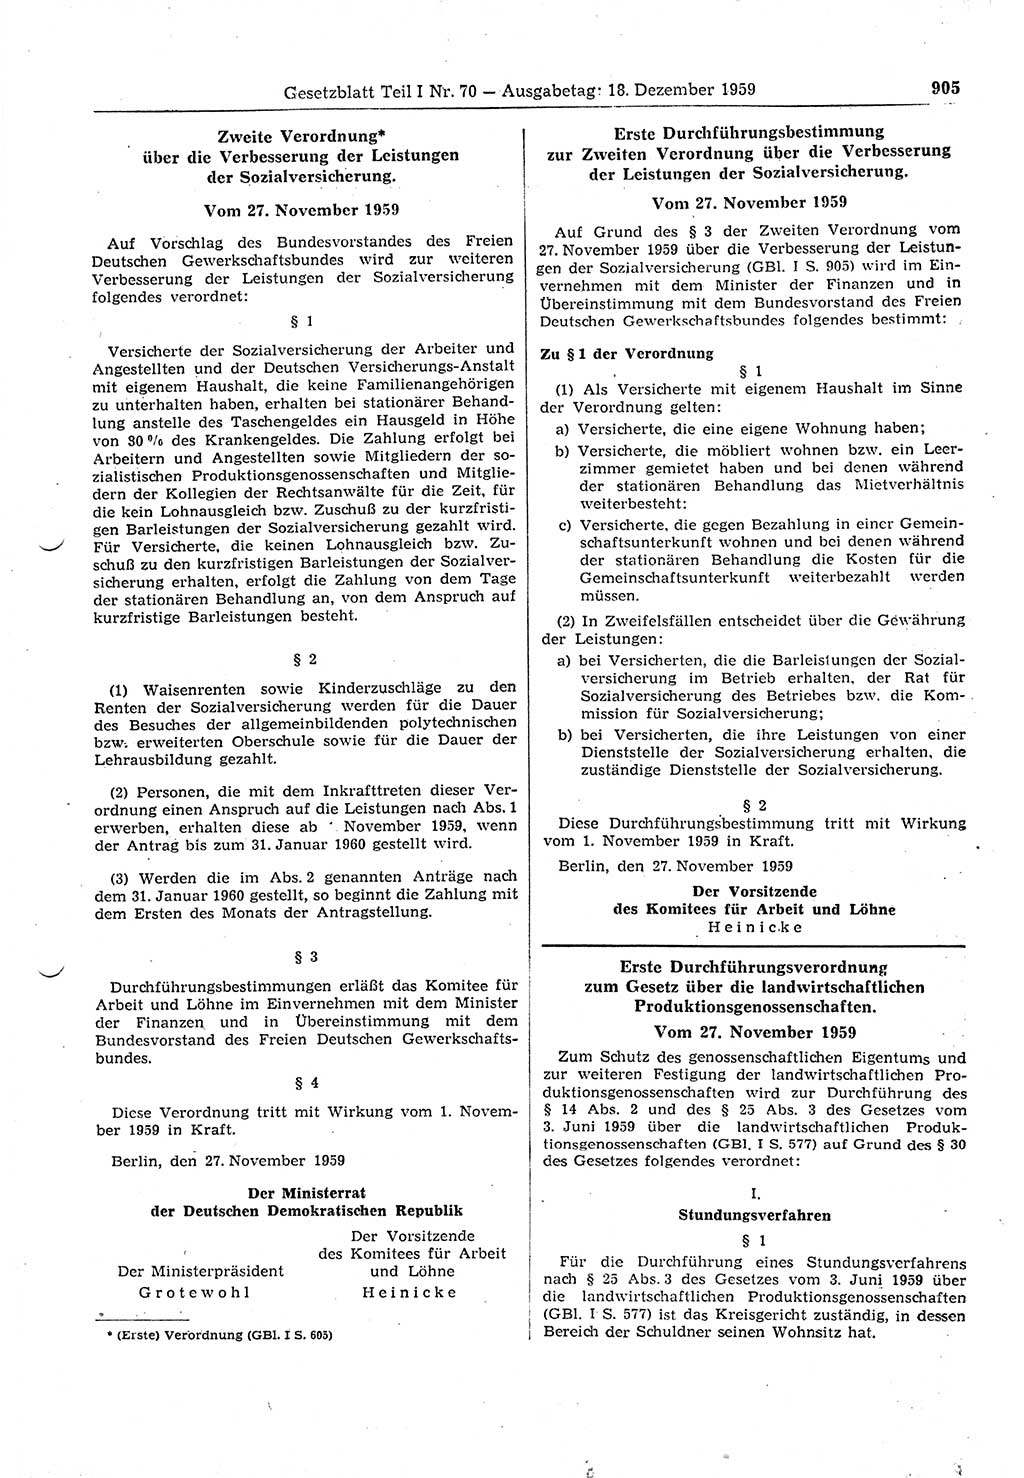 Gesetzblatt (GBl.) der Deutschen Demokratischen Republik (DDR) Teil Ⅰ 1959, Seite 905 (GBl. DDR Ⅰ 1959, S. 905)